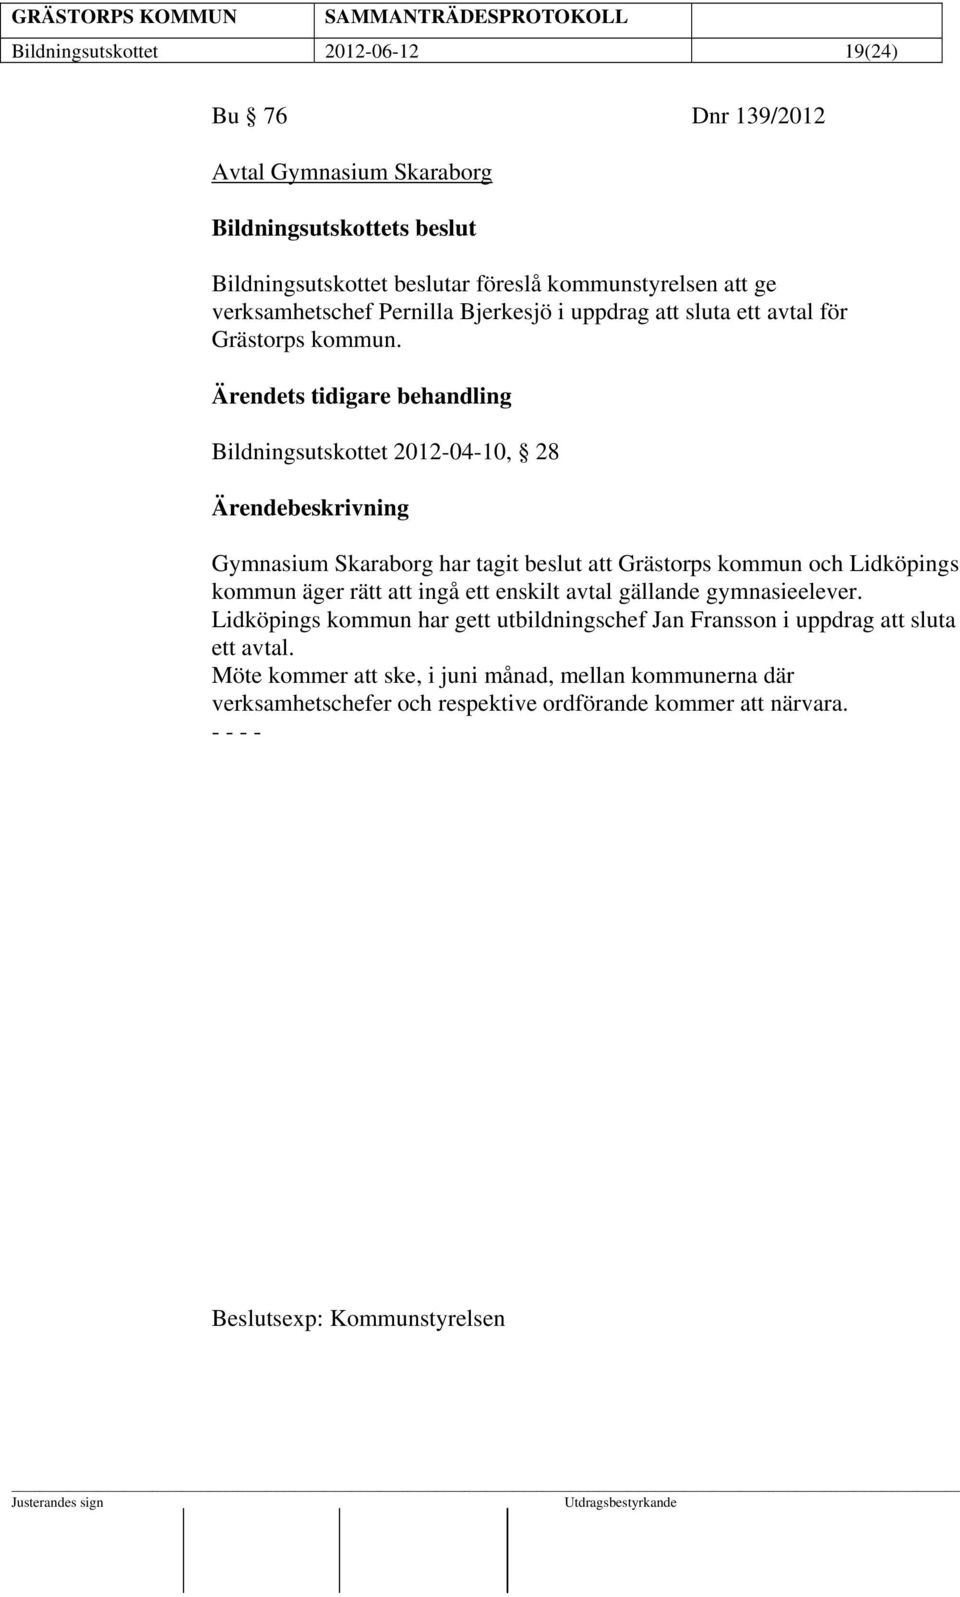 Ärendets tidigare behandling Bildningsutskottet 2012-04-10, 28 Gymnasium Skaraborg har tagit beslut att Grästorps kommun och Lidköpings kommun äger rätt att ingå ett